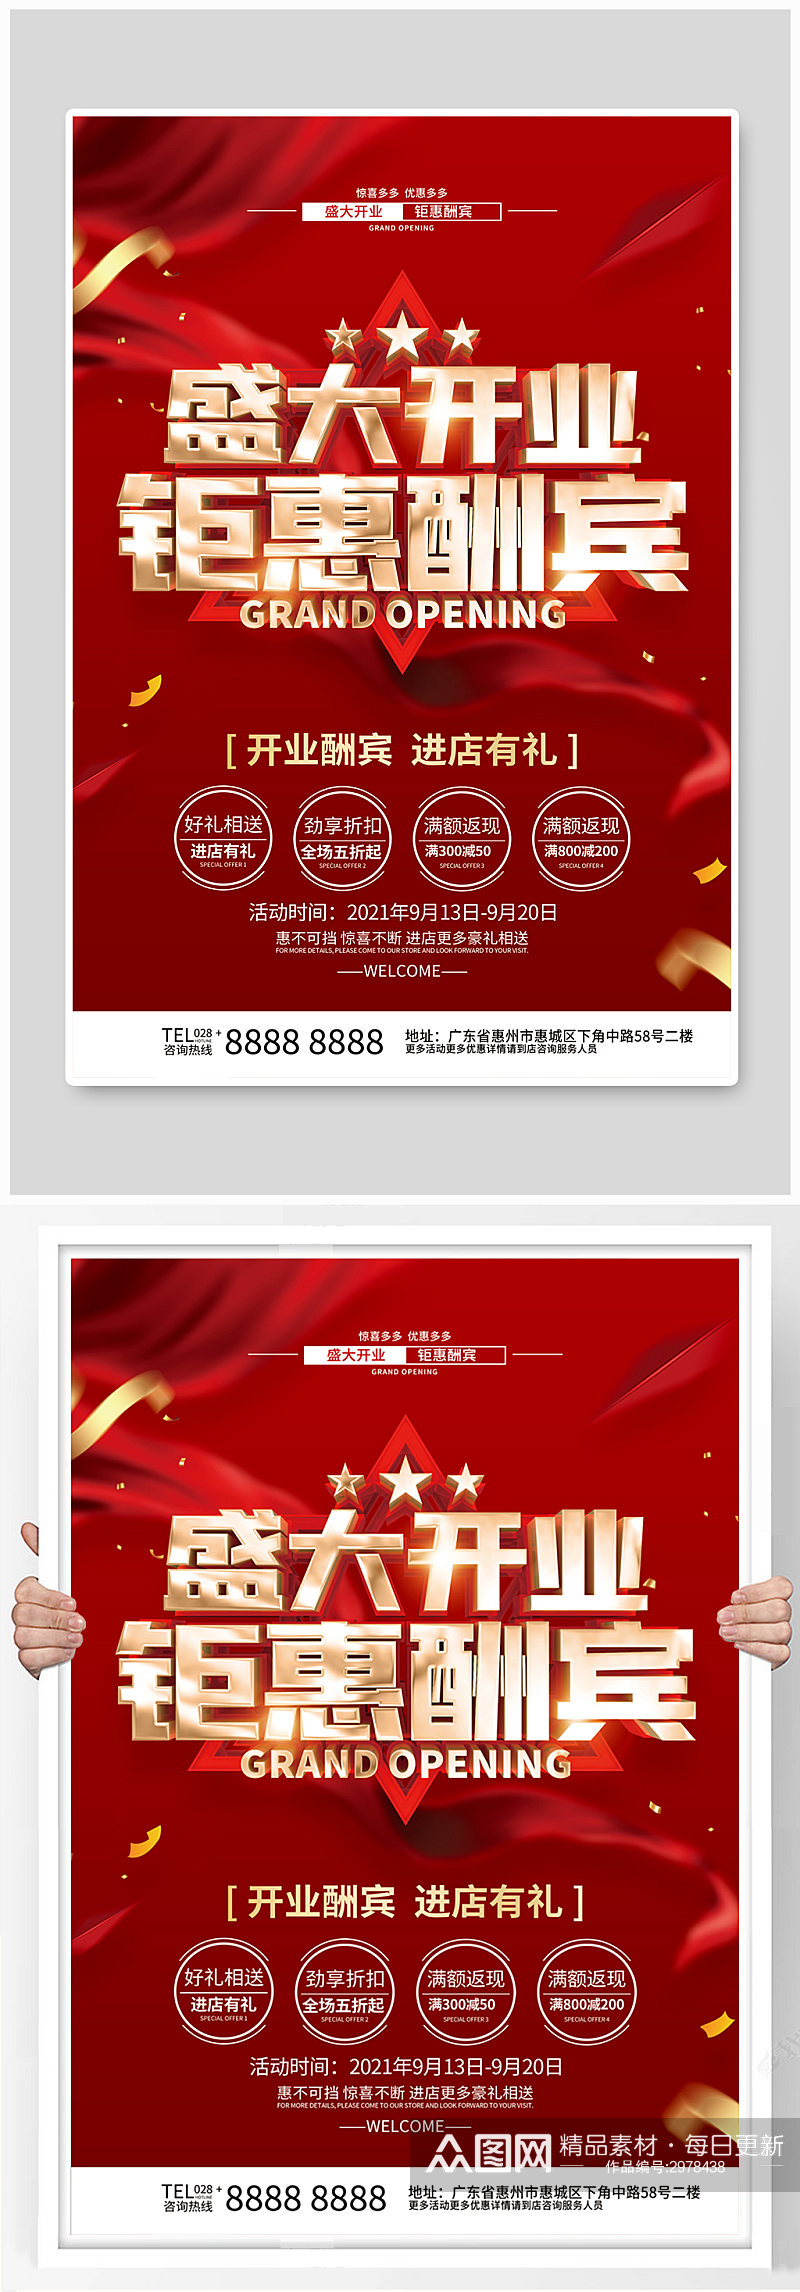 红色喜庆开业促销海报素材